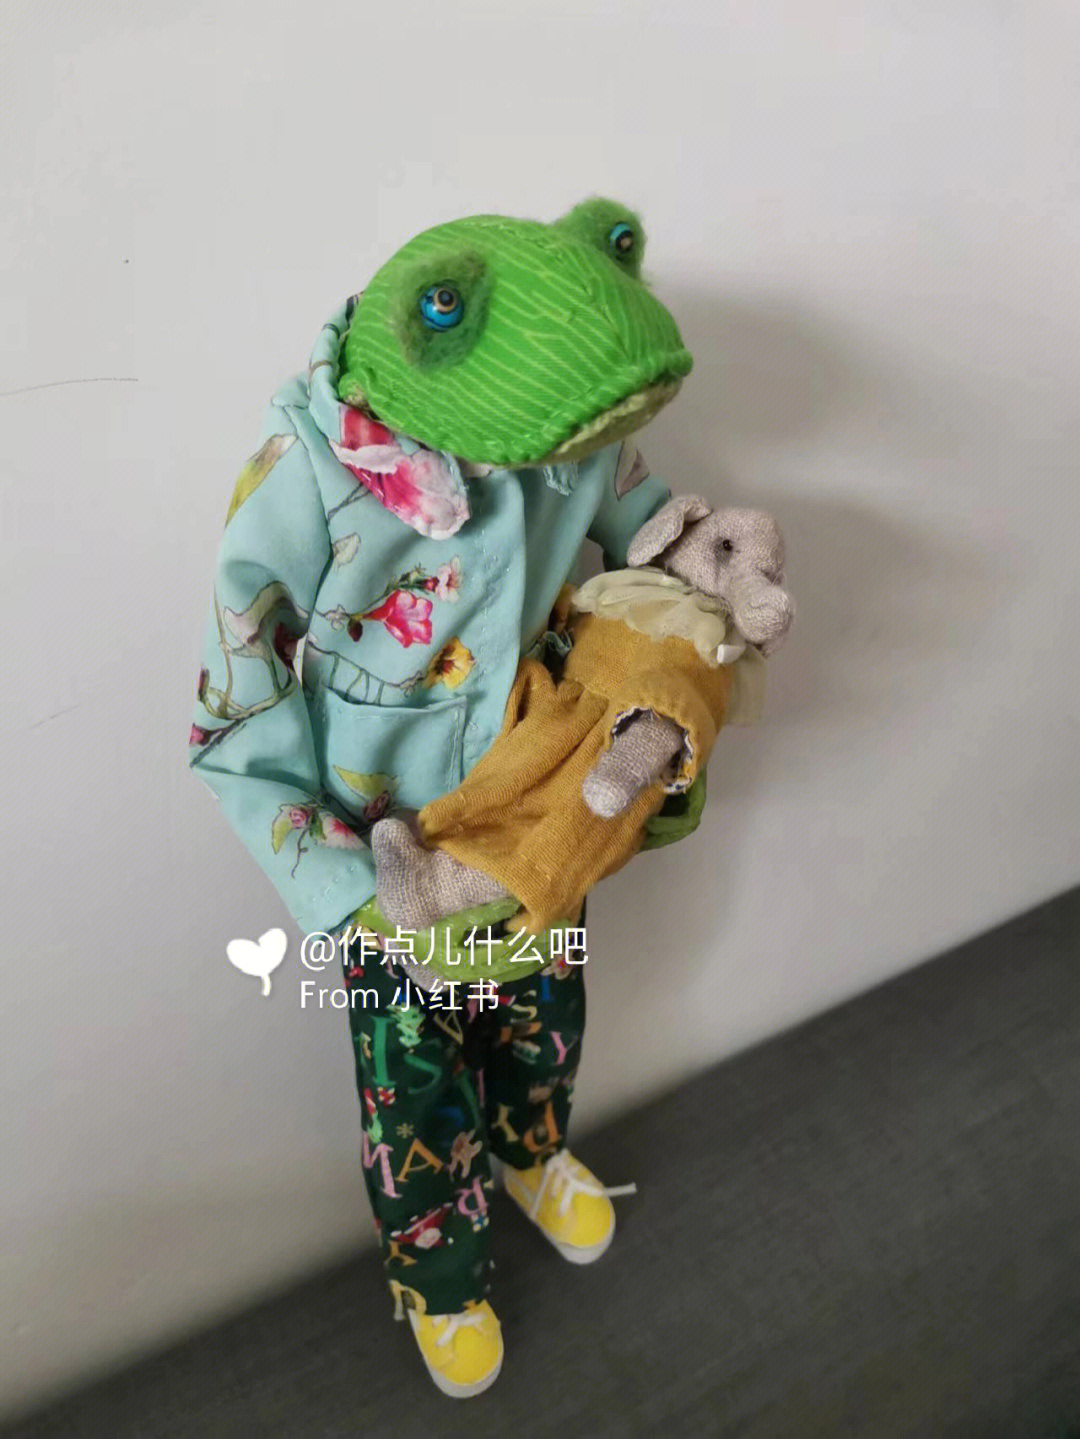 蛙抱宝宝的姿势蛙式图片